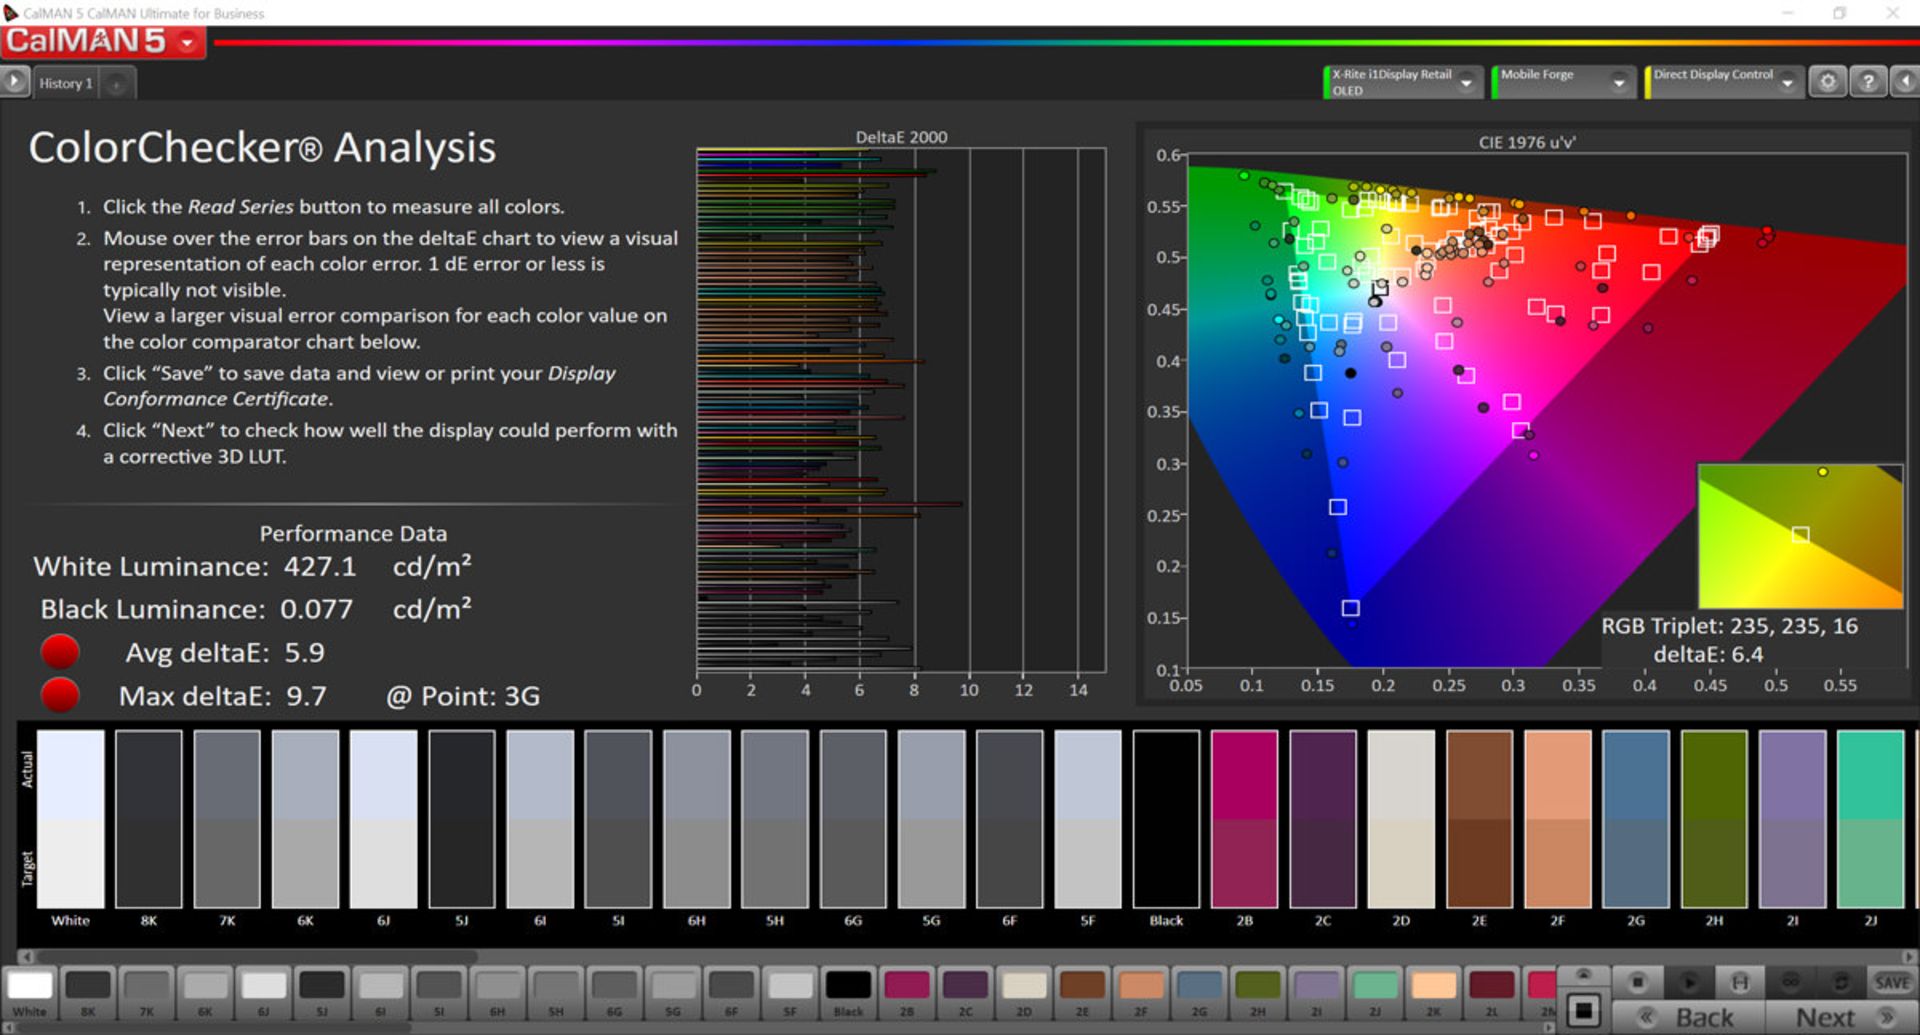 دقت رنگ در حالت Automatic Contrast در فضای رنگی sRGB برای گوشی می میکس ۳